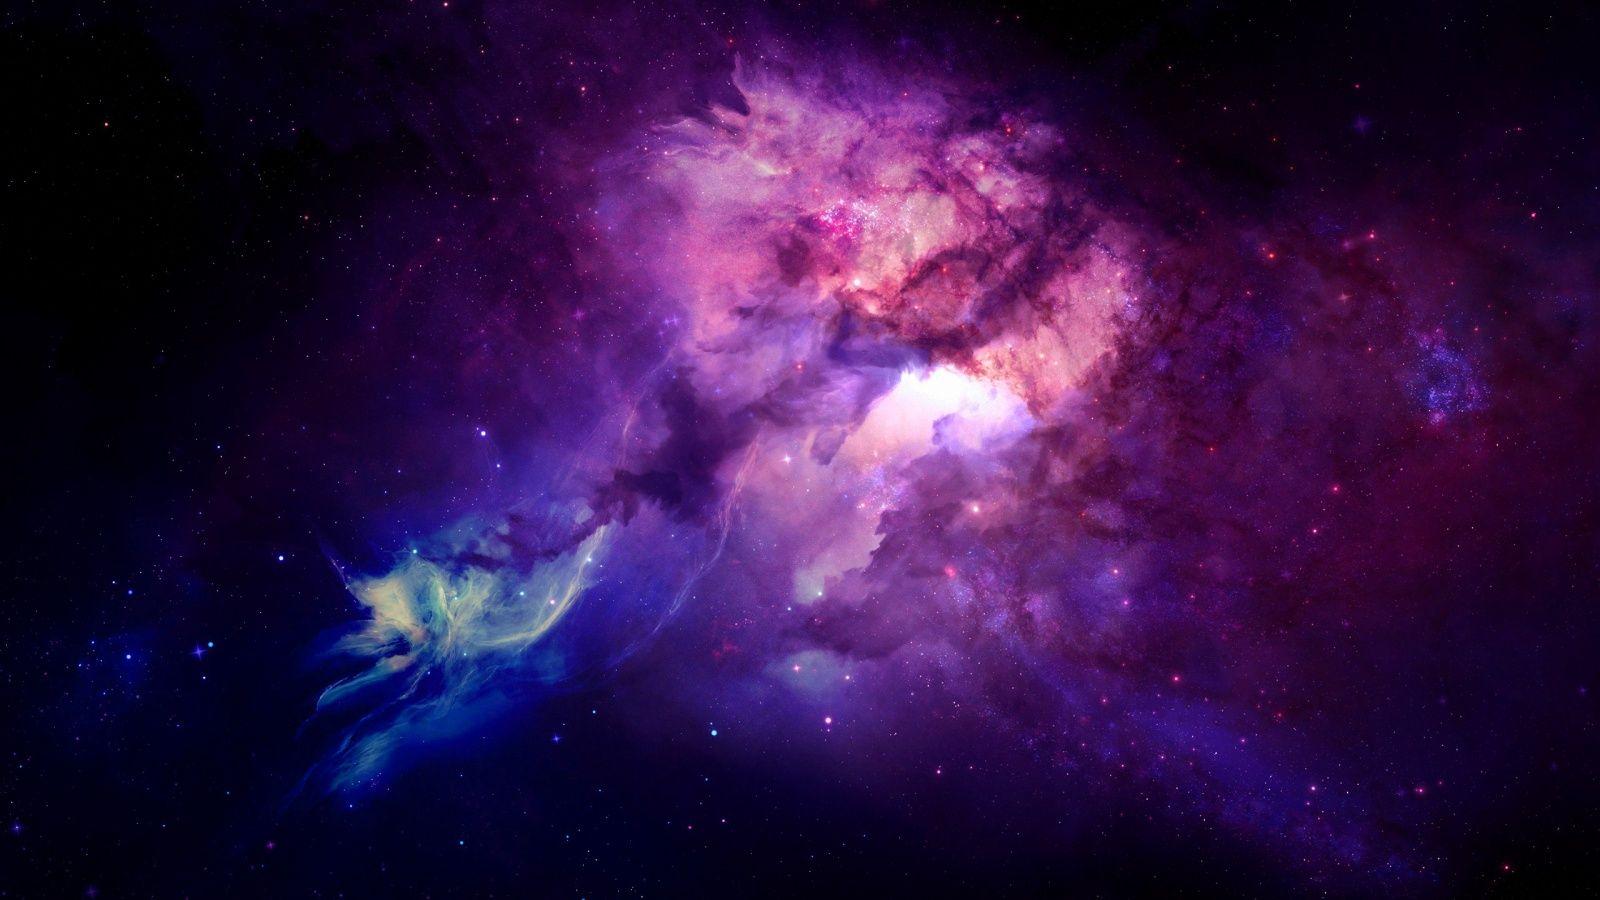 Khám phá bức hình nền không gian màu tím này và được truyền cảm hứng từ những khám phá của vũ trụ.